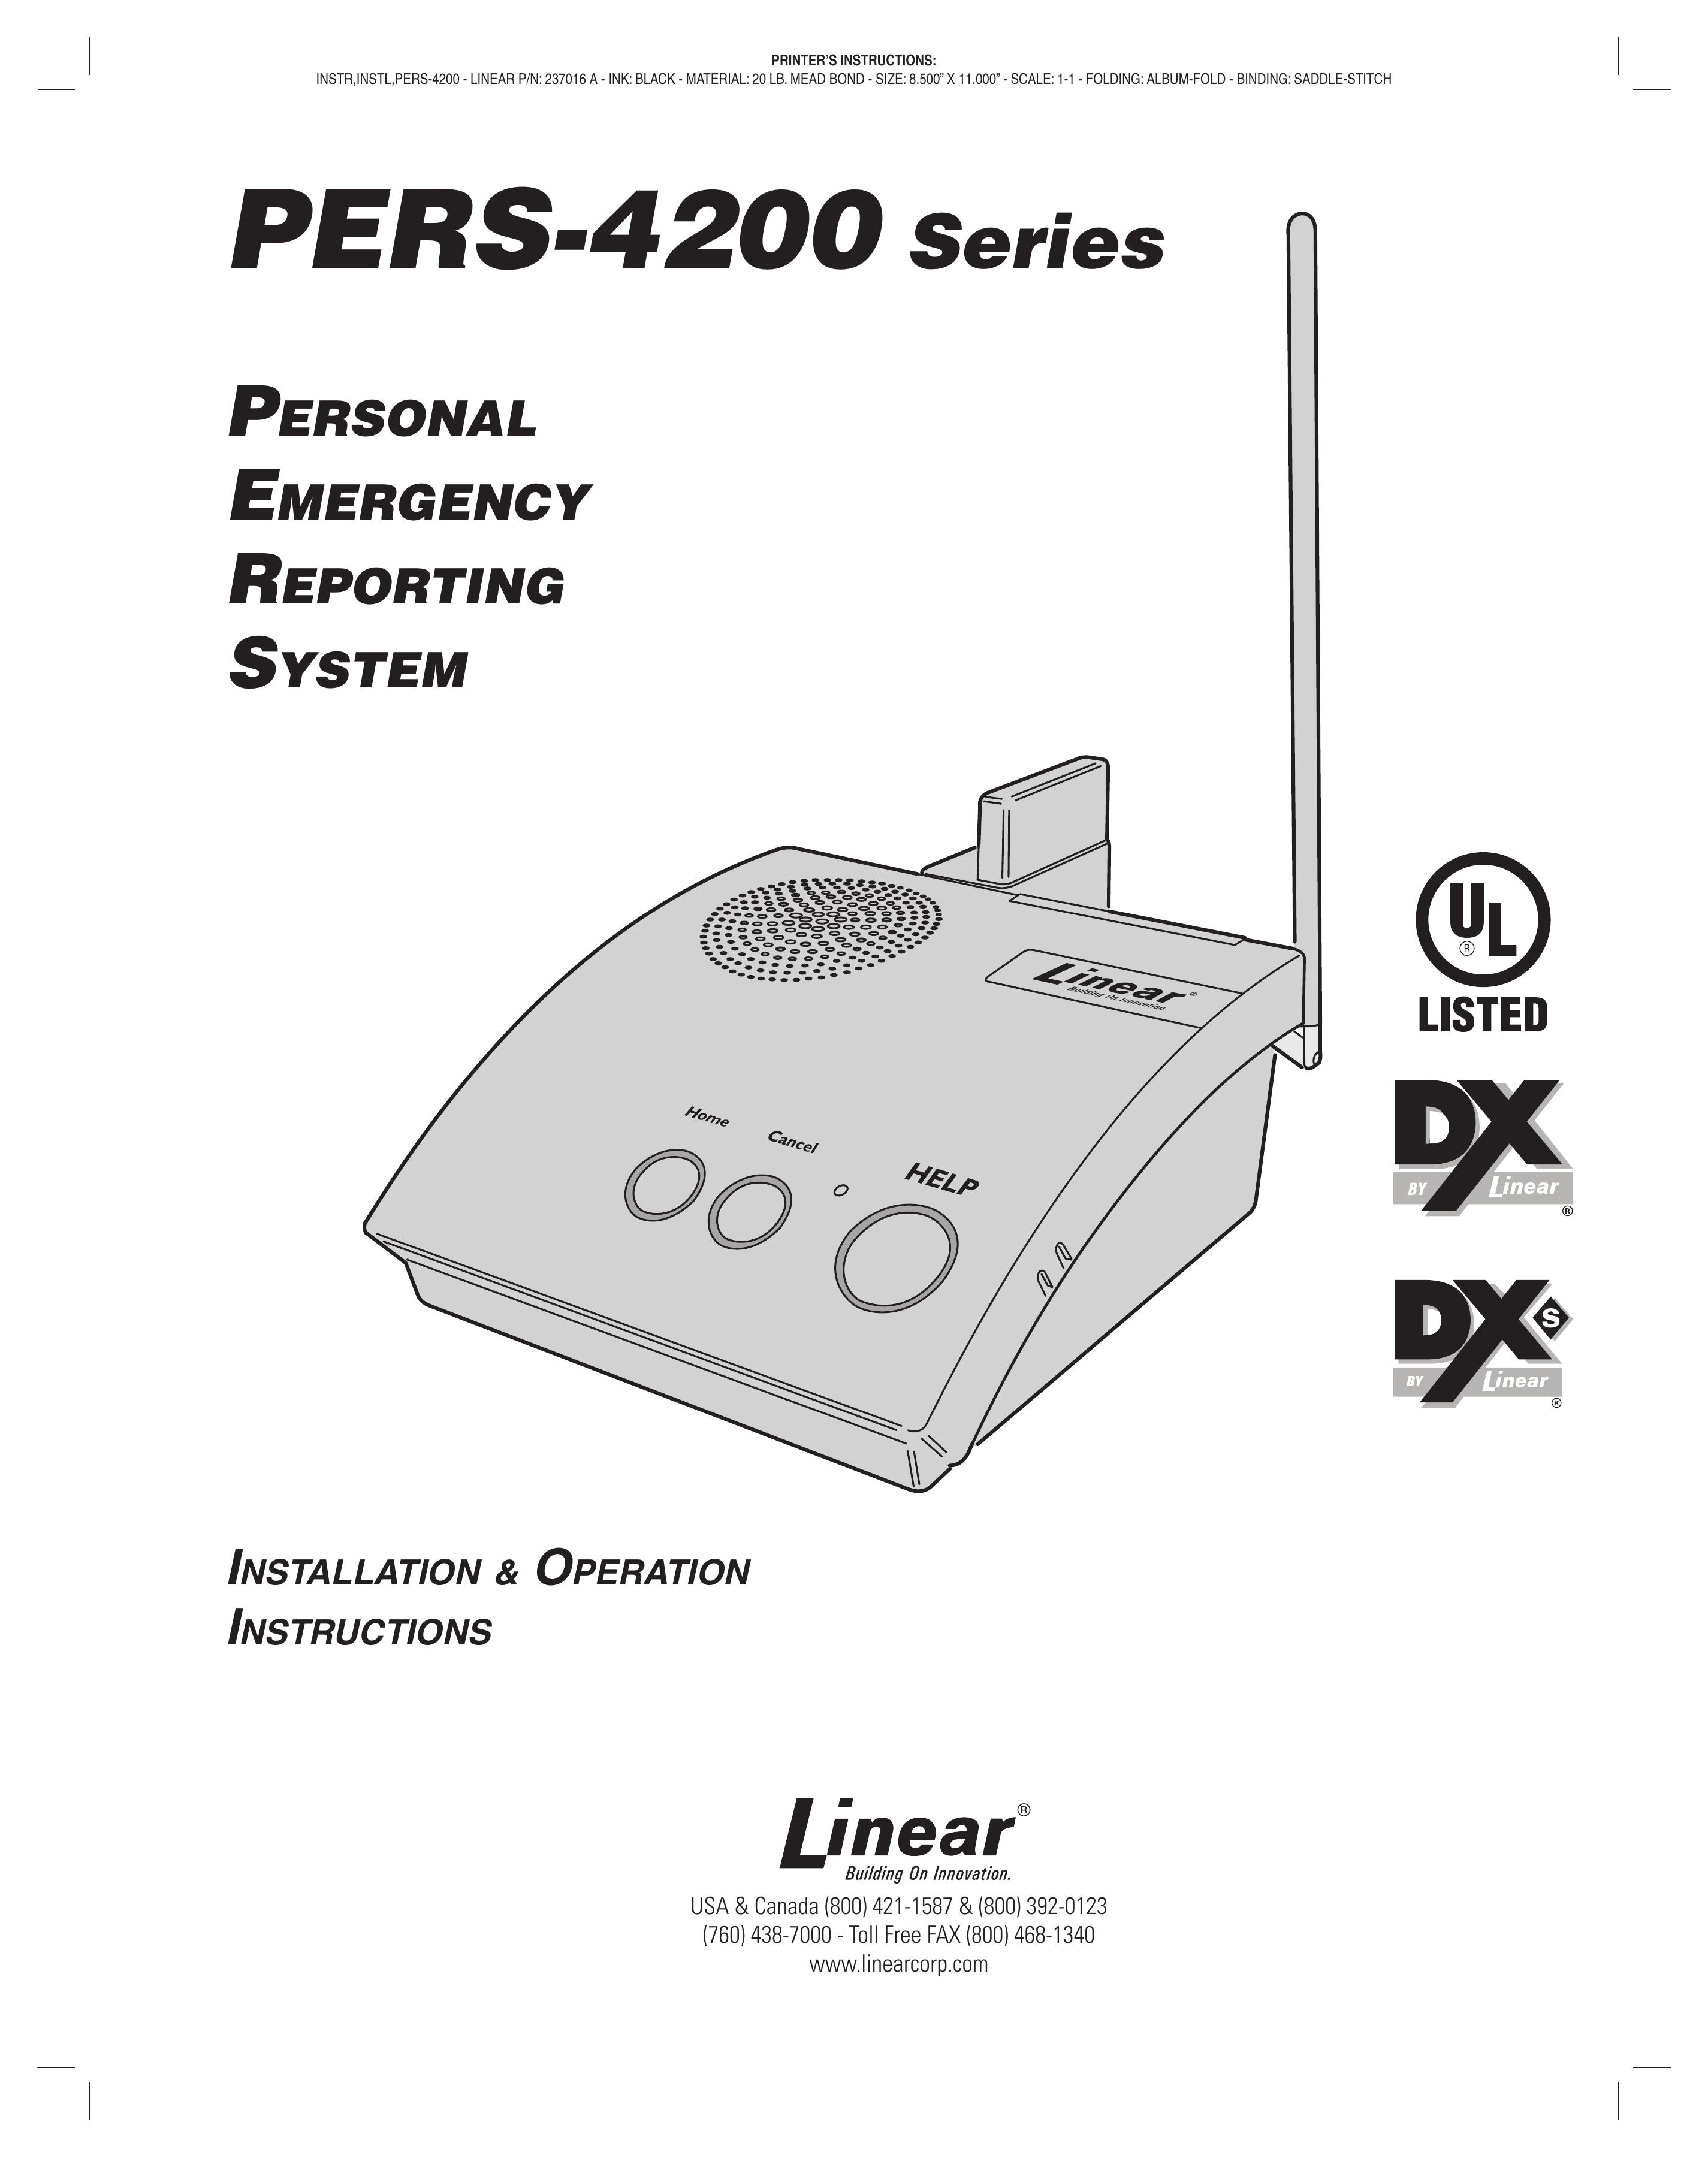 Linear PERS-4200 Series Medical Alarms User Manual